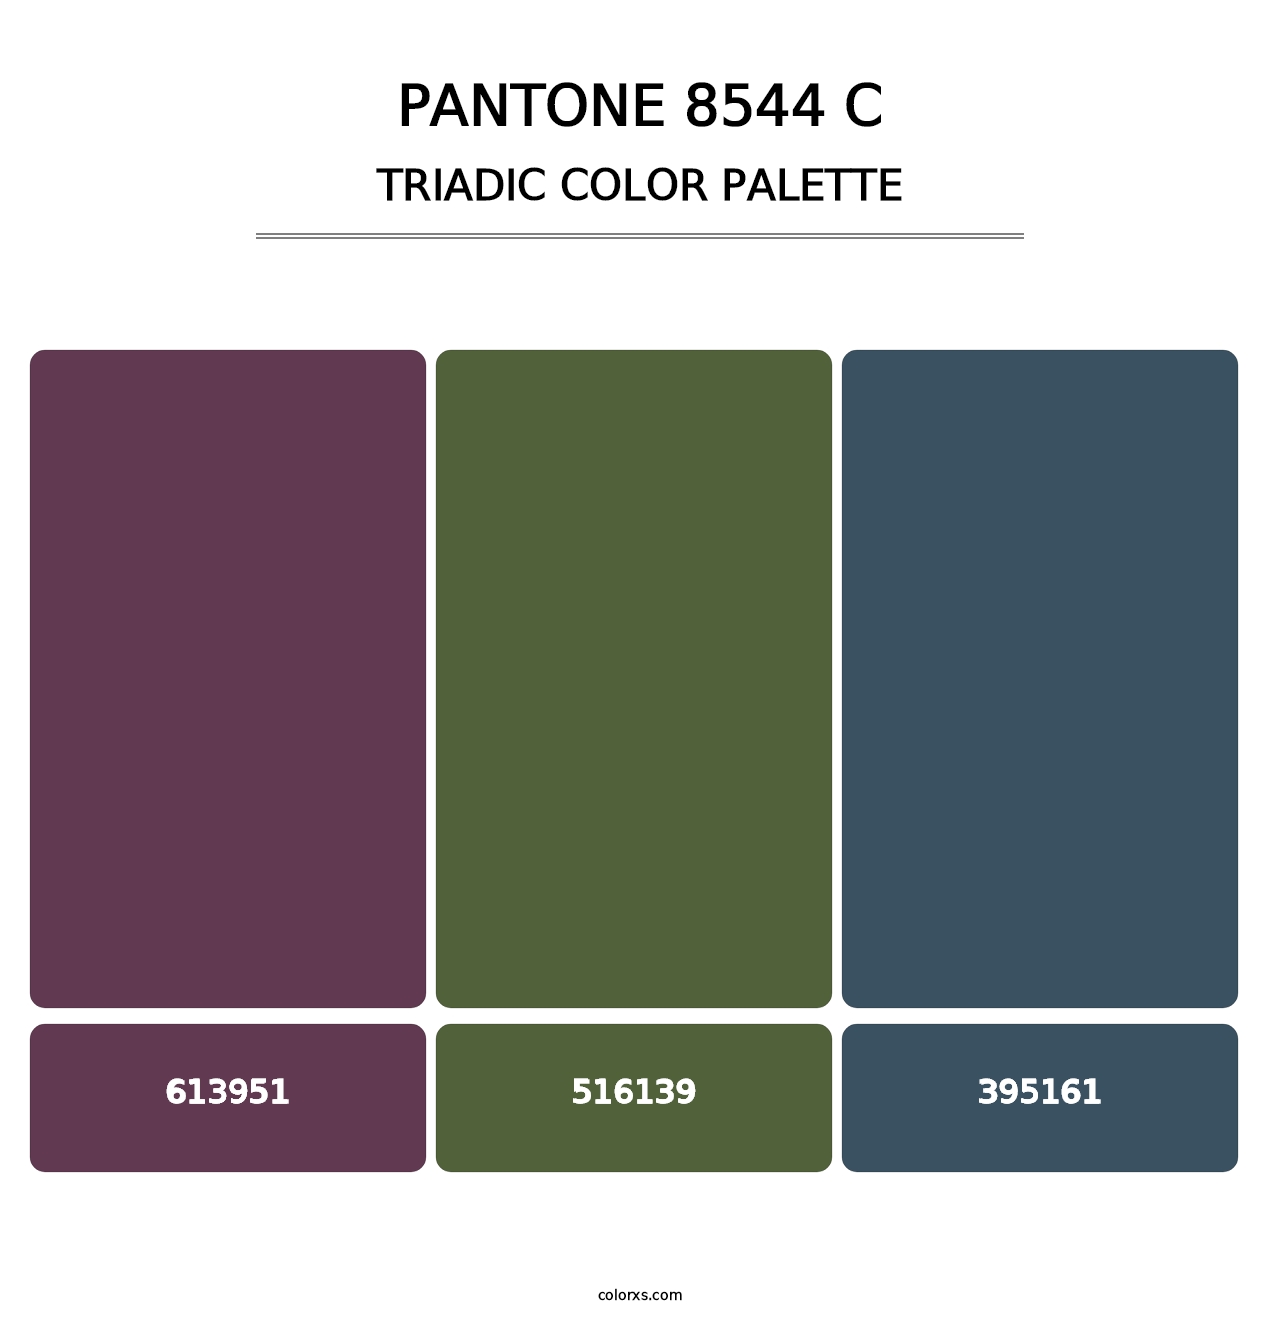 PANTONE 8544 C - Triadic Color Palette